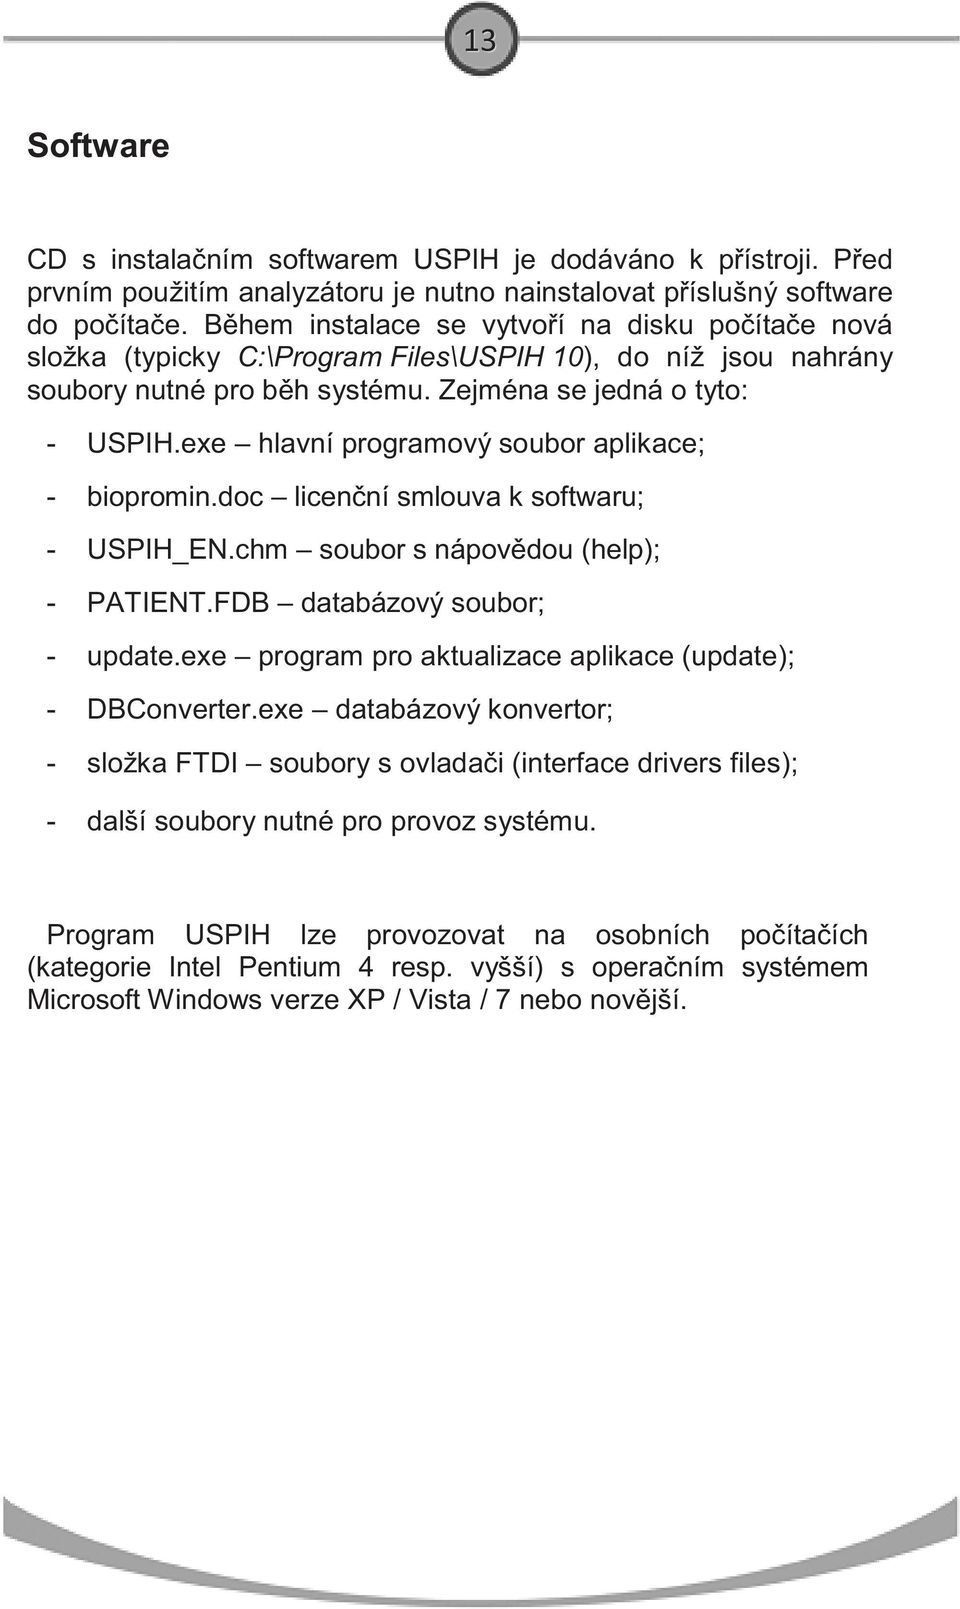 exe hlavní programový soubor aplikace; biopromin.doc licen ní smlouva k softwaru; USPIH_EN.chm soubor s nápov dou (help); PATIENT.FDB databázový soubor; update.